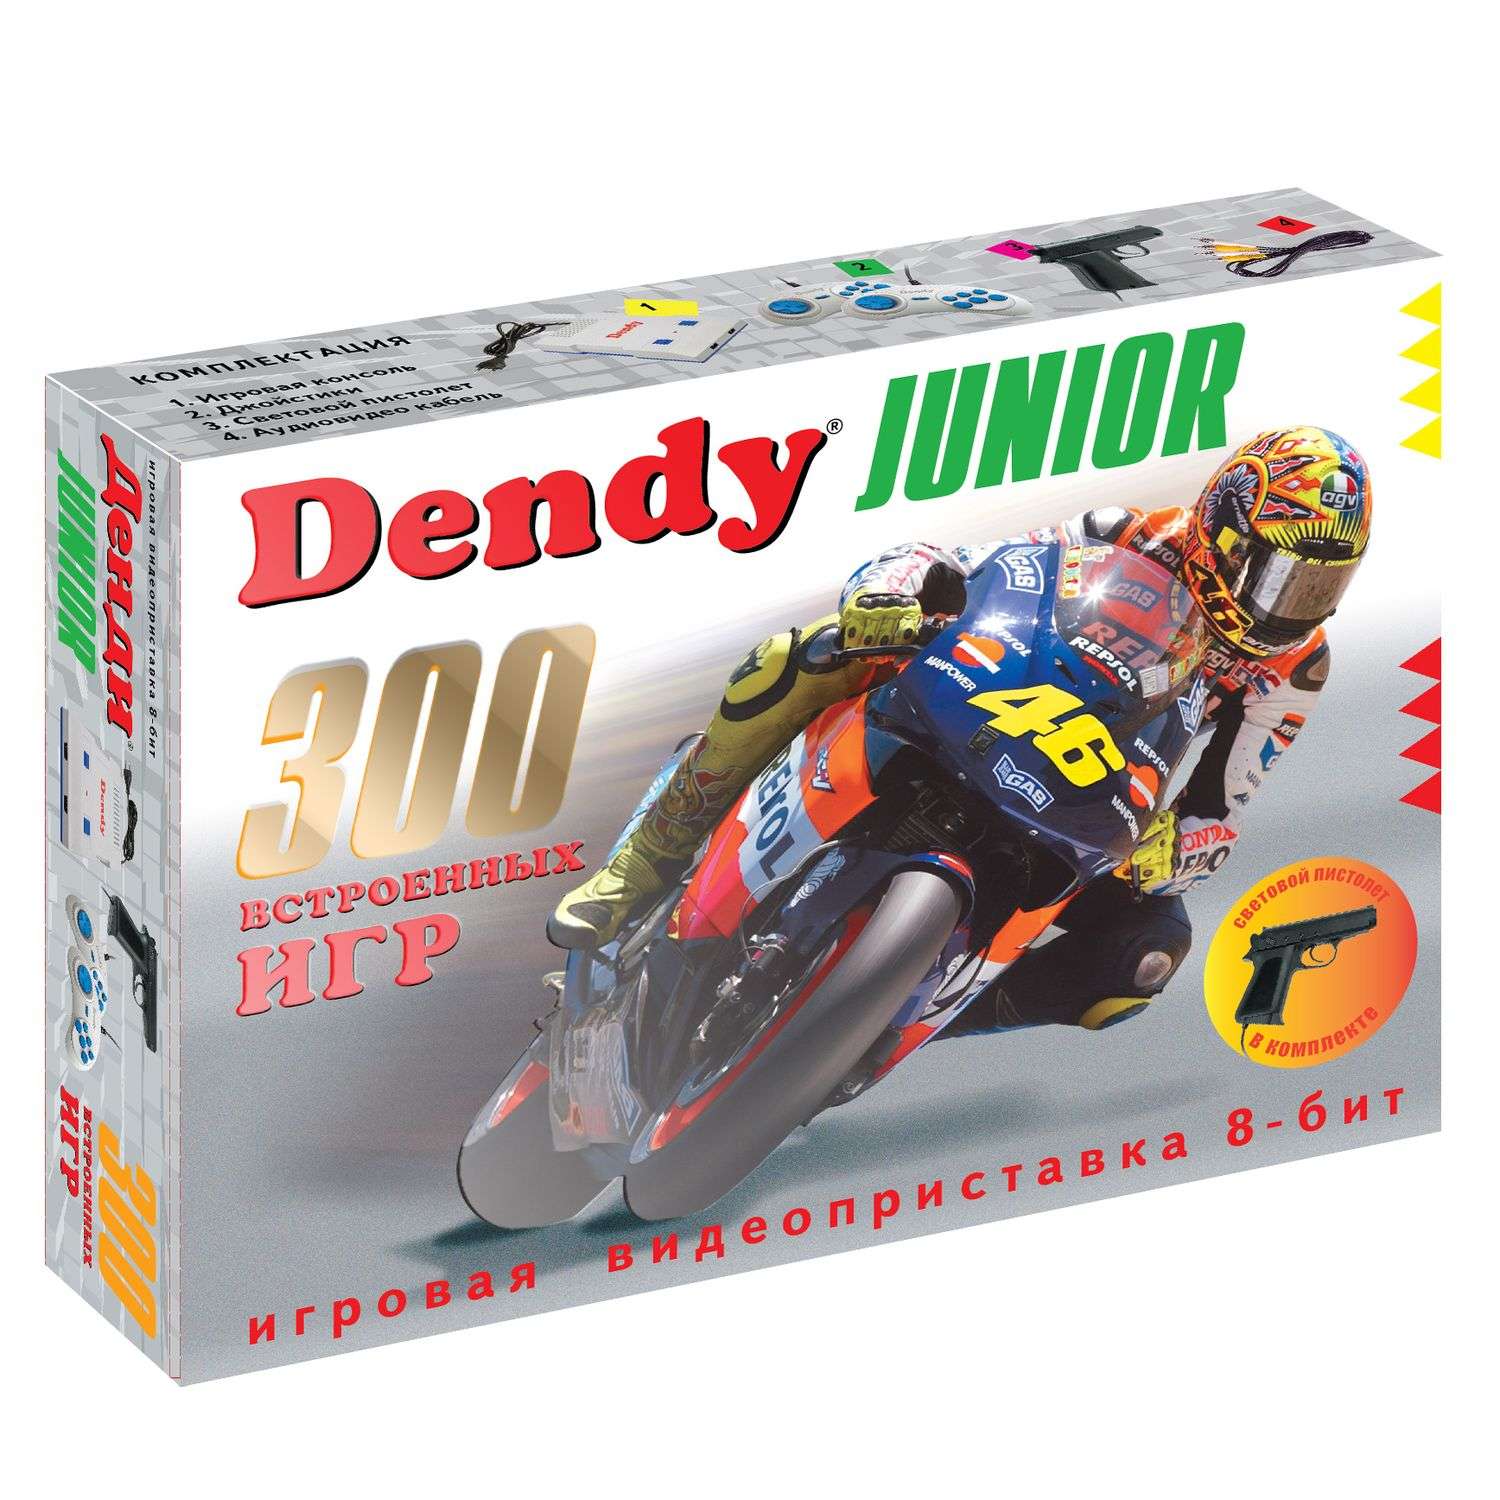 Игровая приставка Dendy Junior 300 игр + пистолет - фото 1